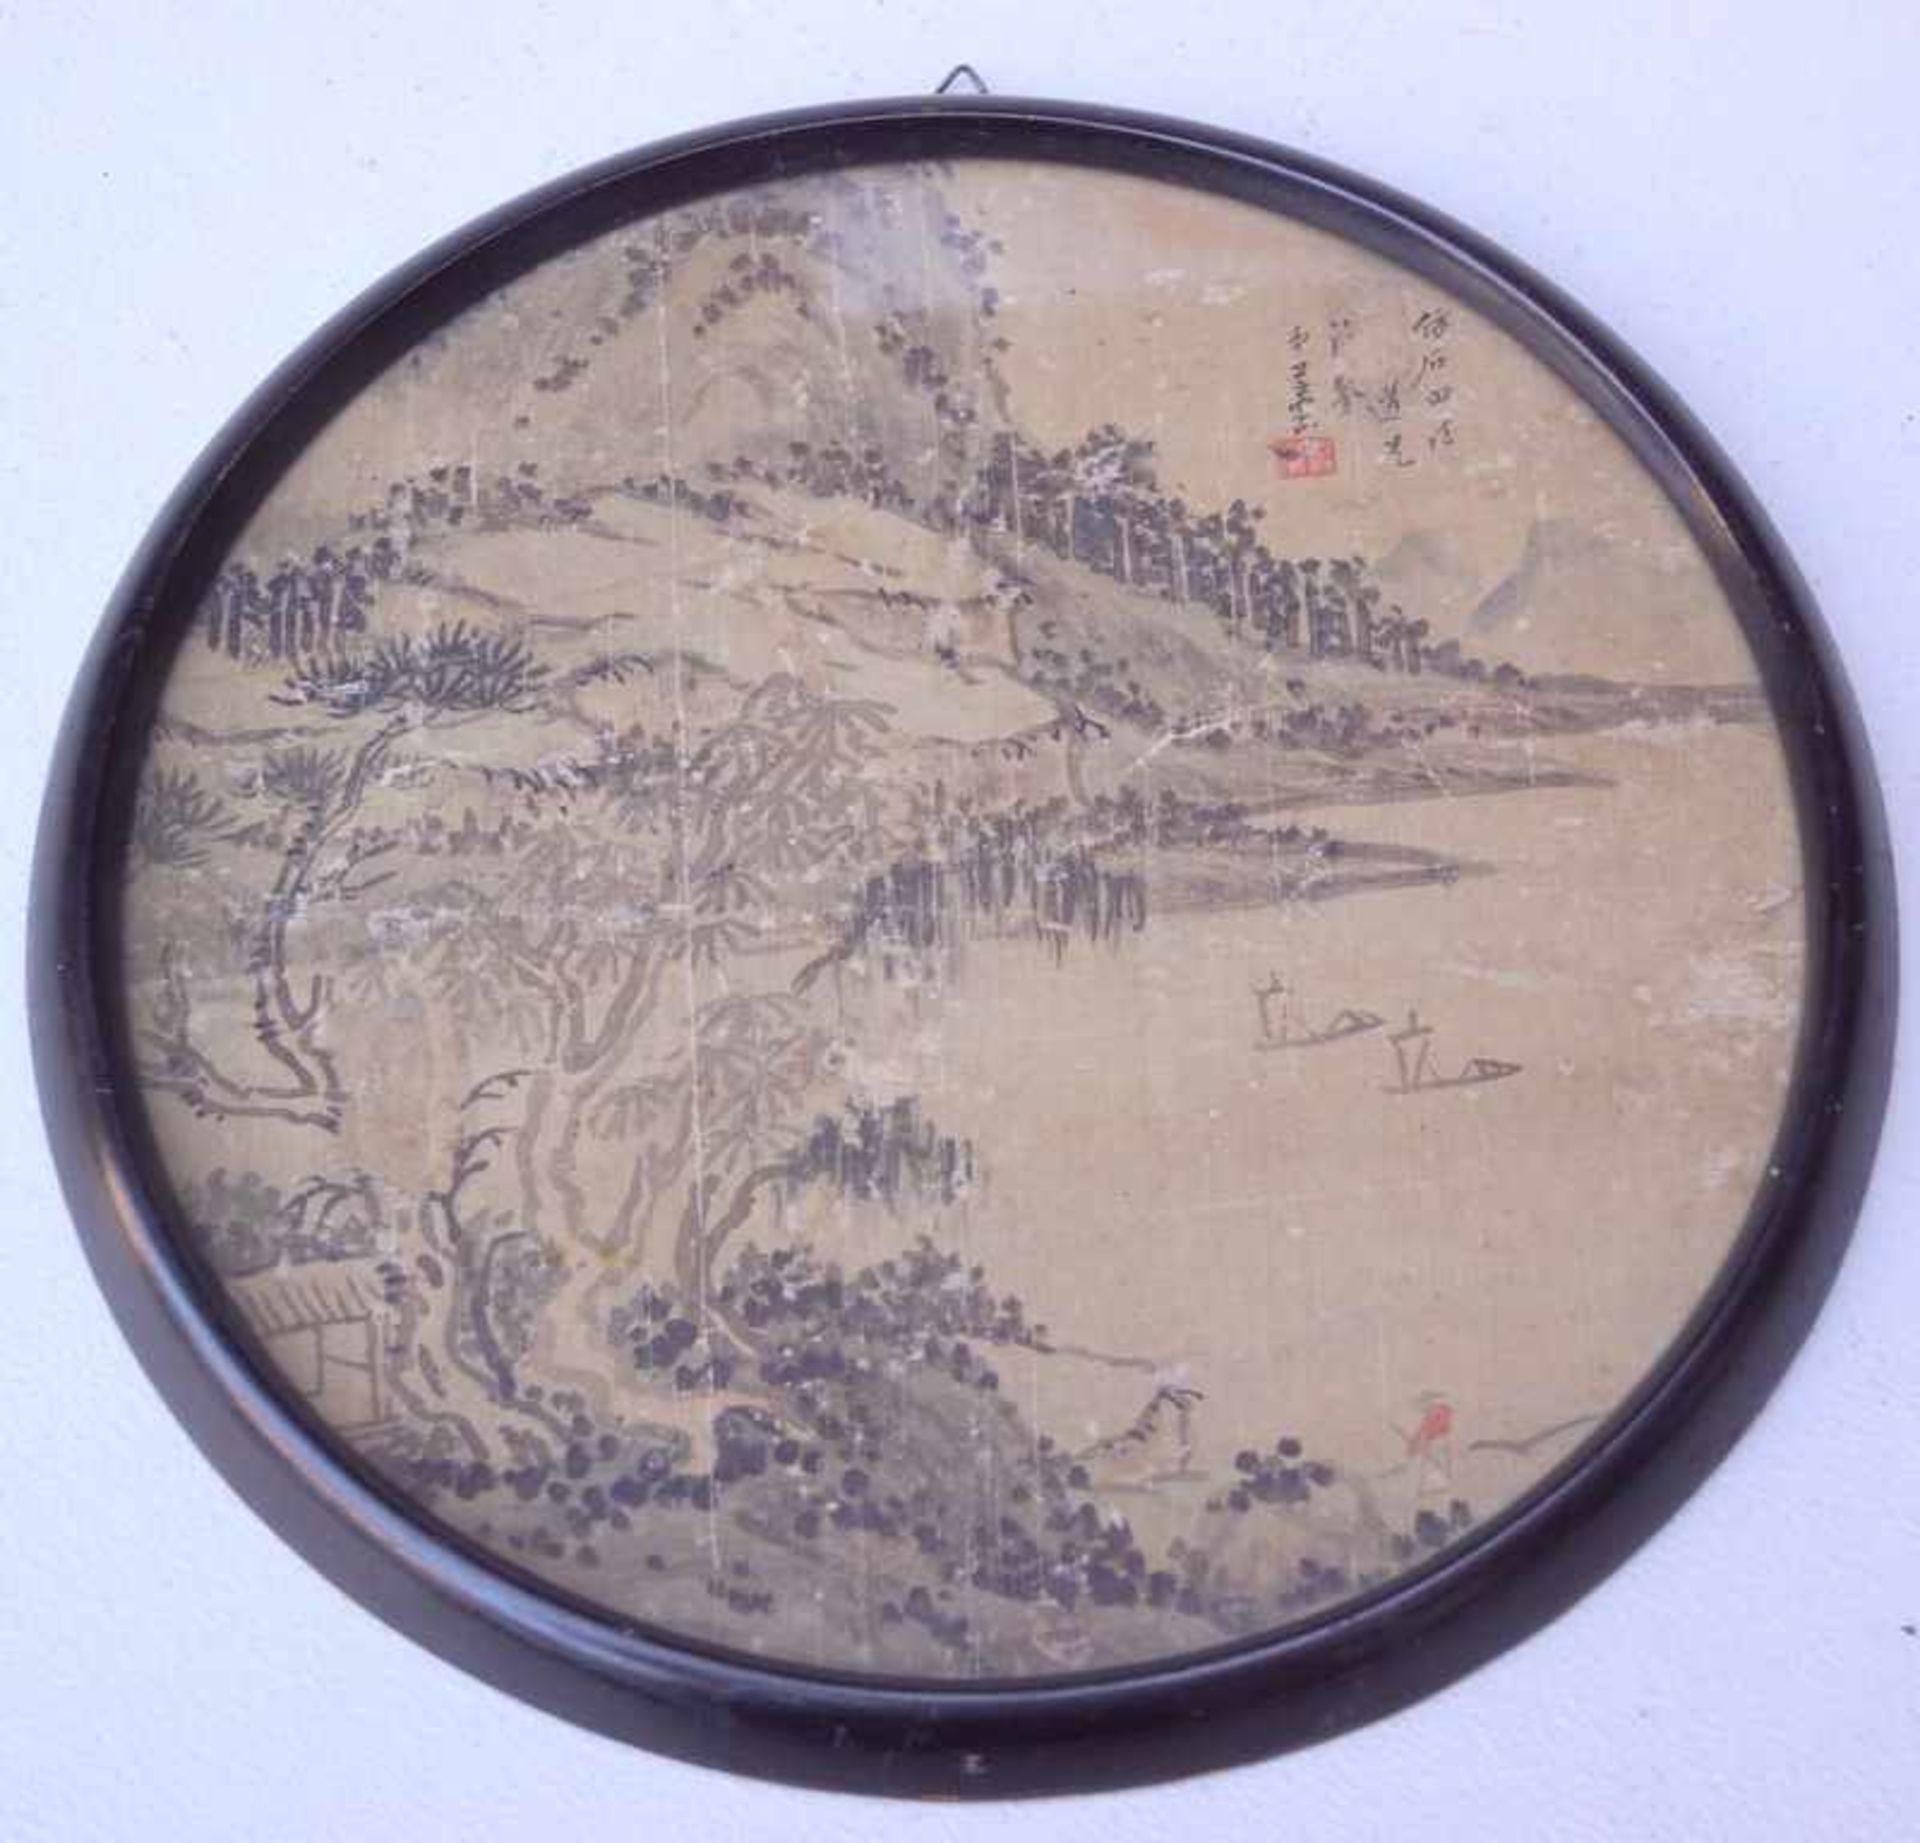 Tuschpinselmalerei auf Seide, China, 19. Jhd.Rundtondo dunkelbraune Tusche auf Seide, rechts oben